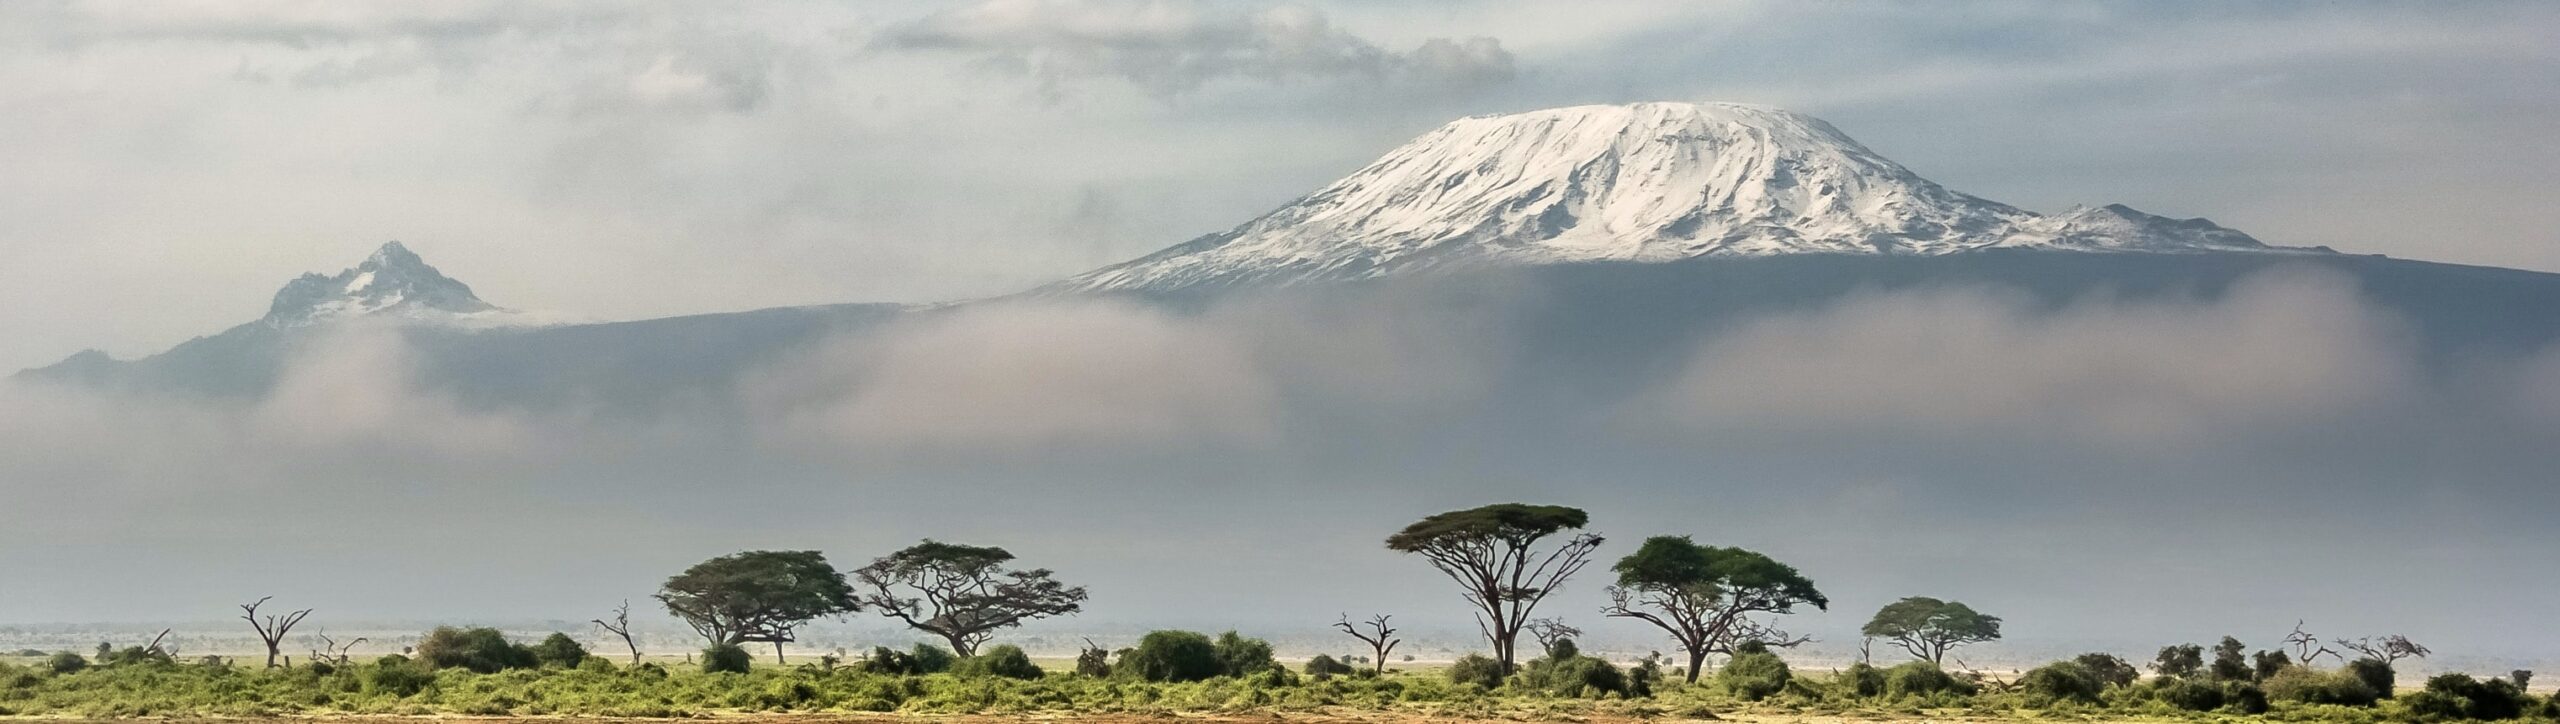 Voyage Kenya Amboseli scaled